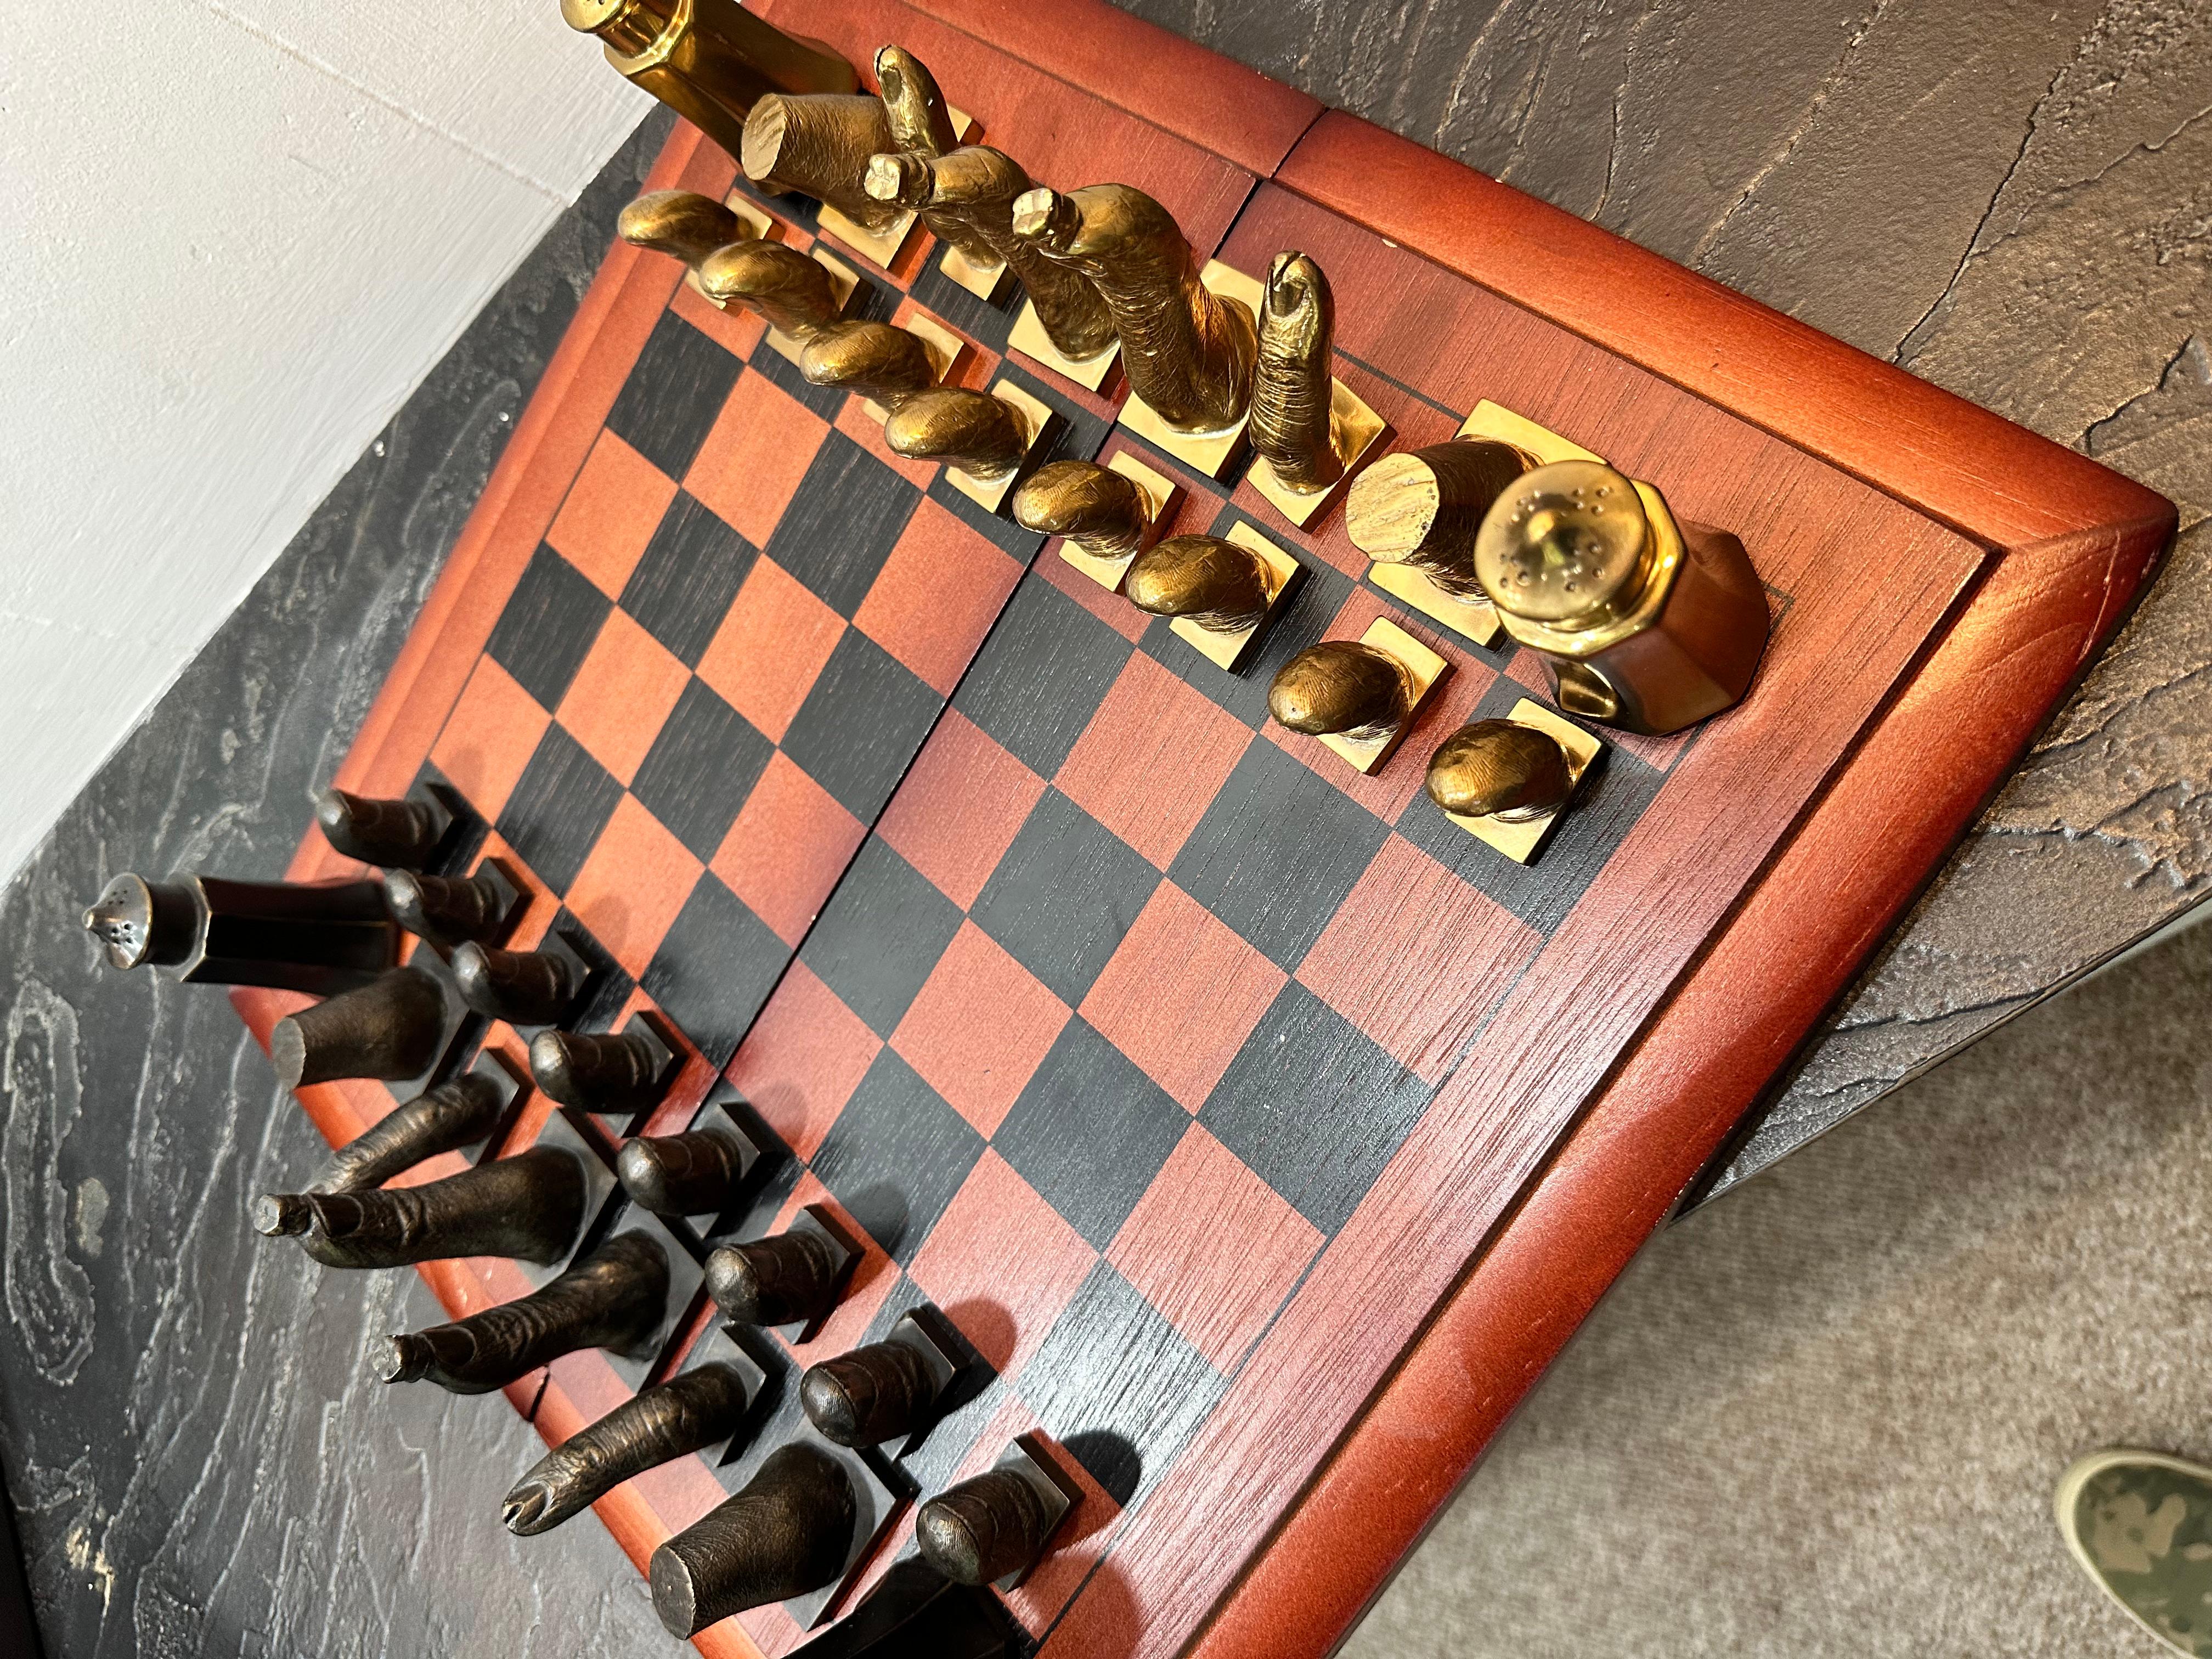 salvador dali chess set